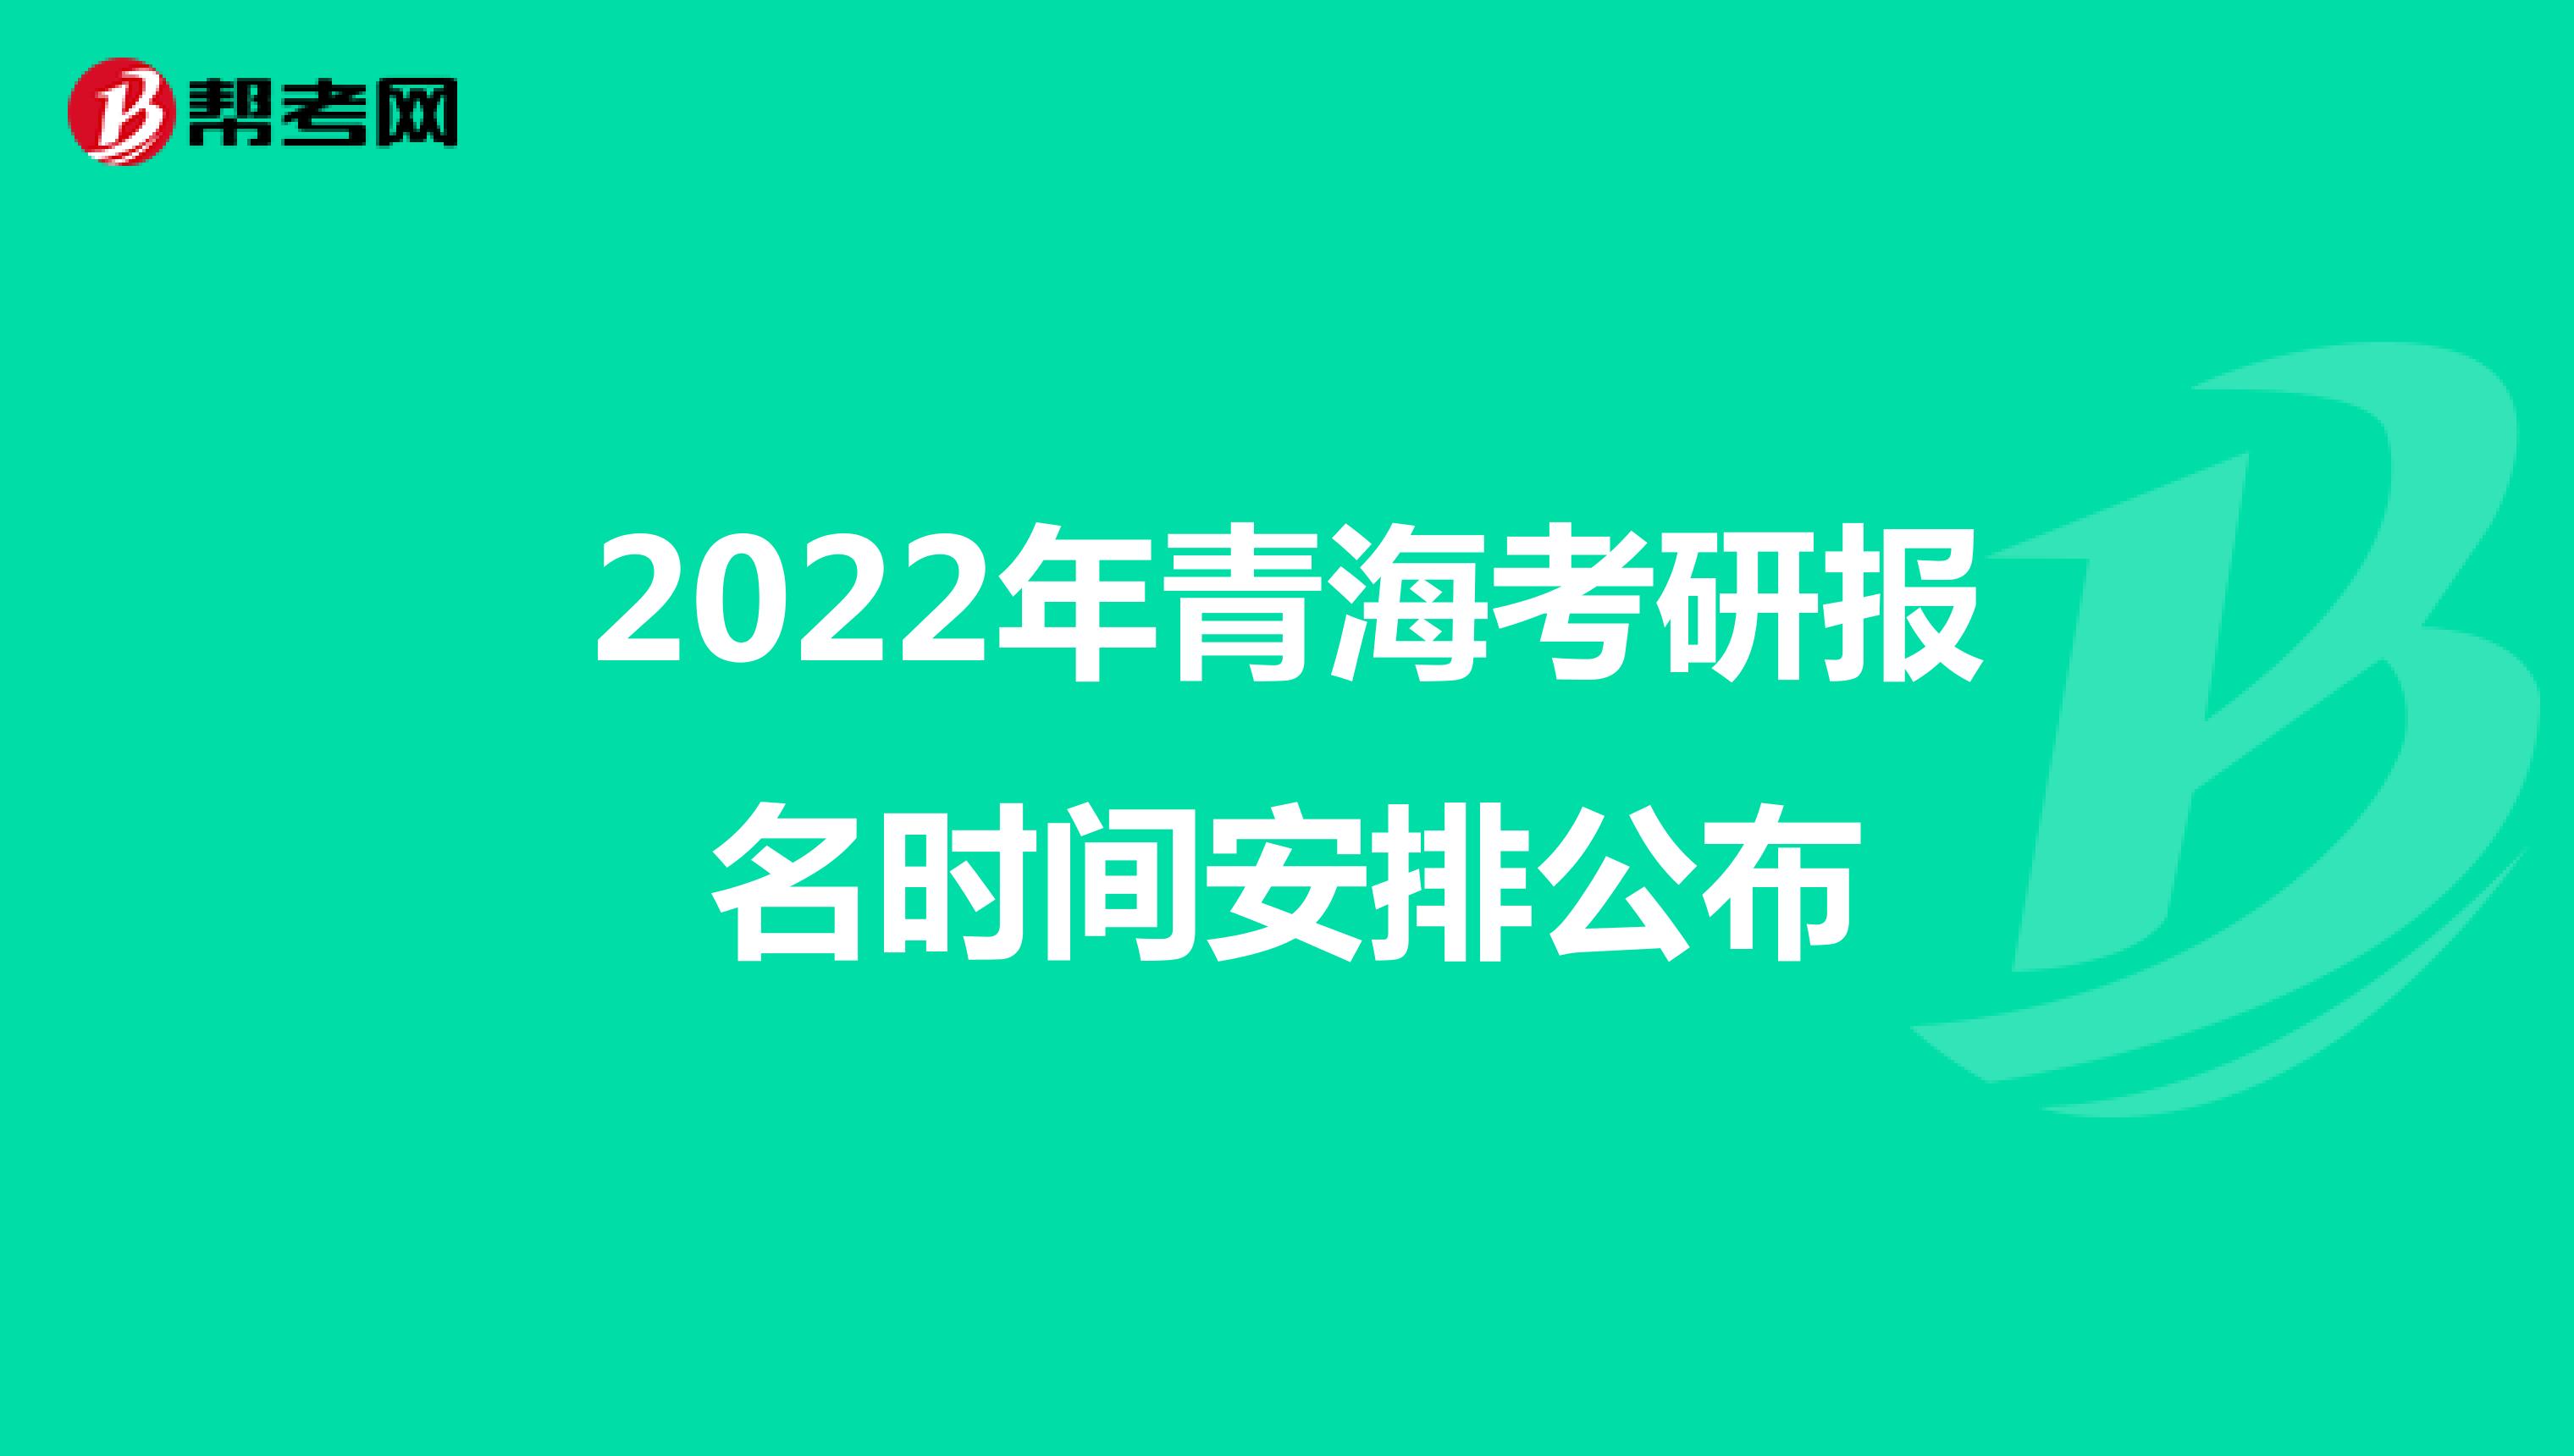 2022年青海考研报名时间安排公布